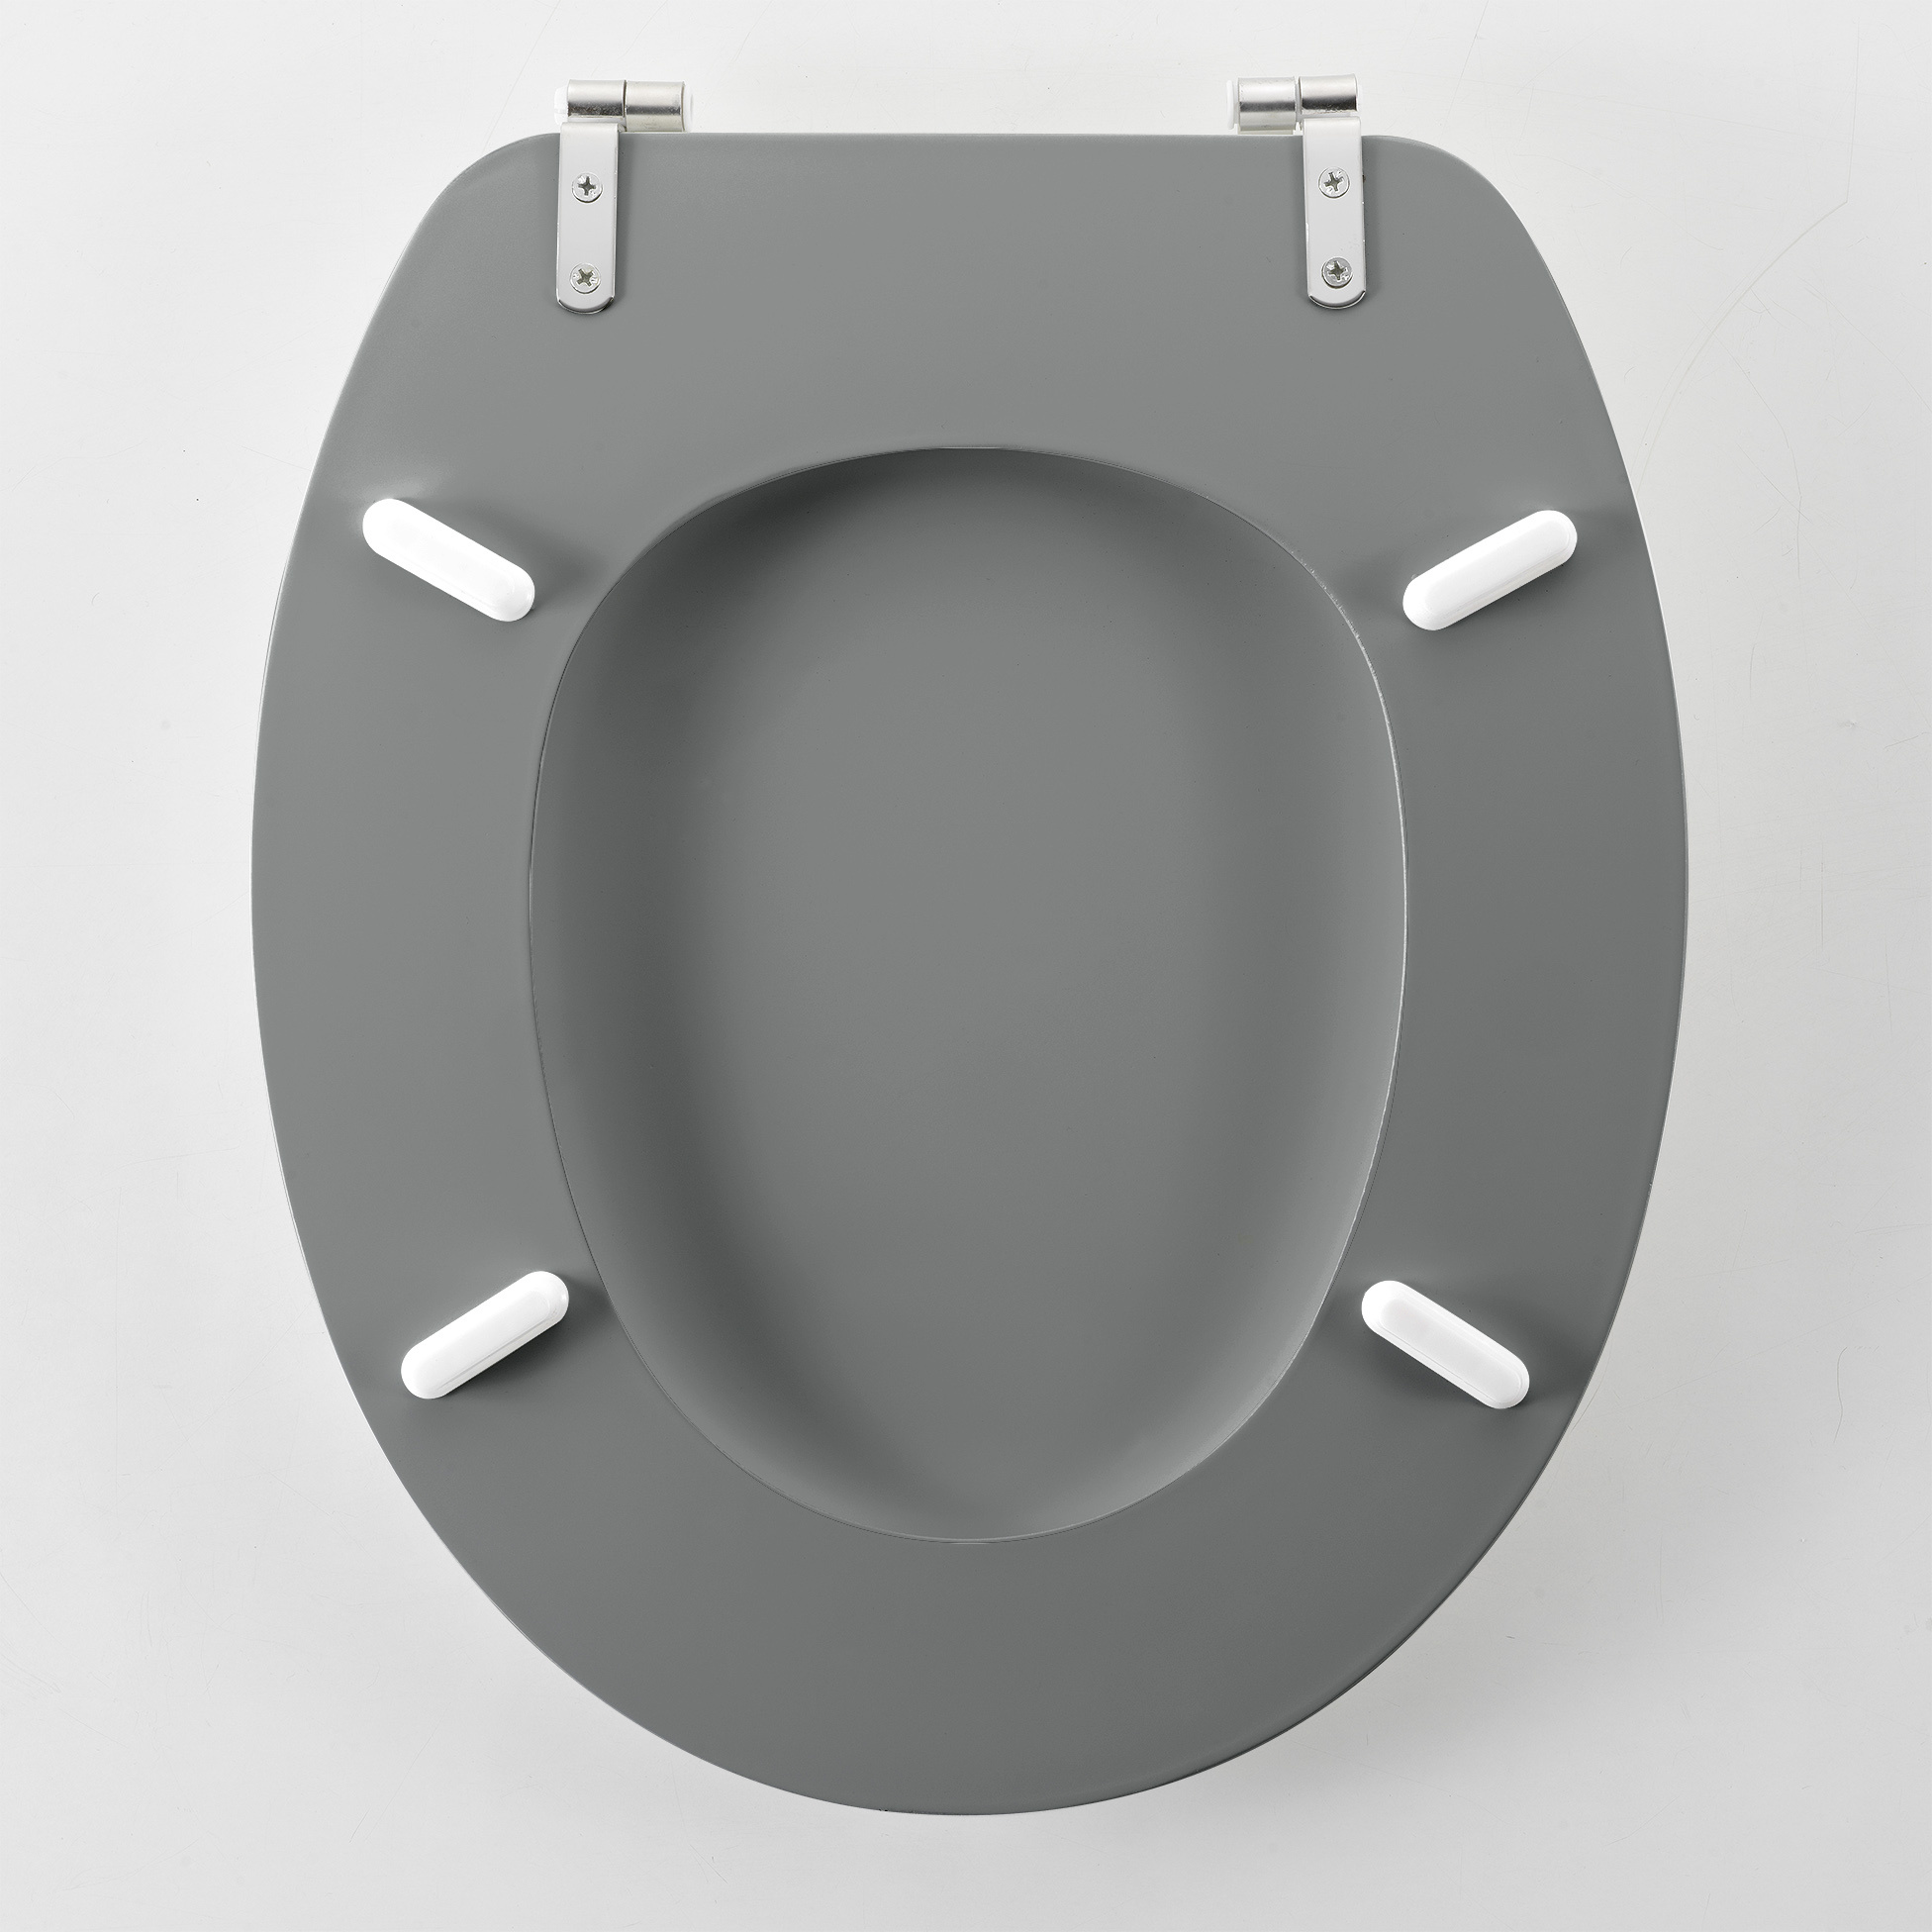 Siège de toilette-WC siège MDF noir mat avec charnières métalliques.